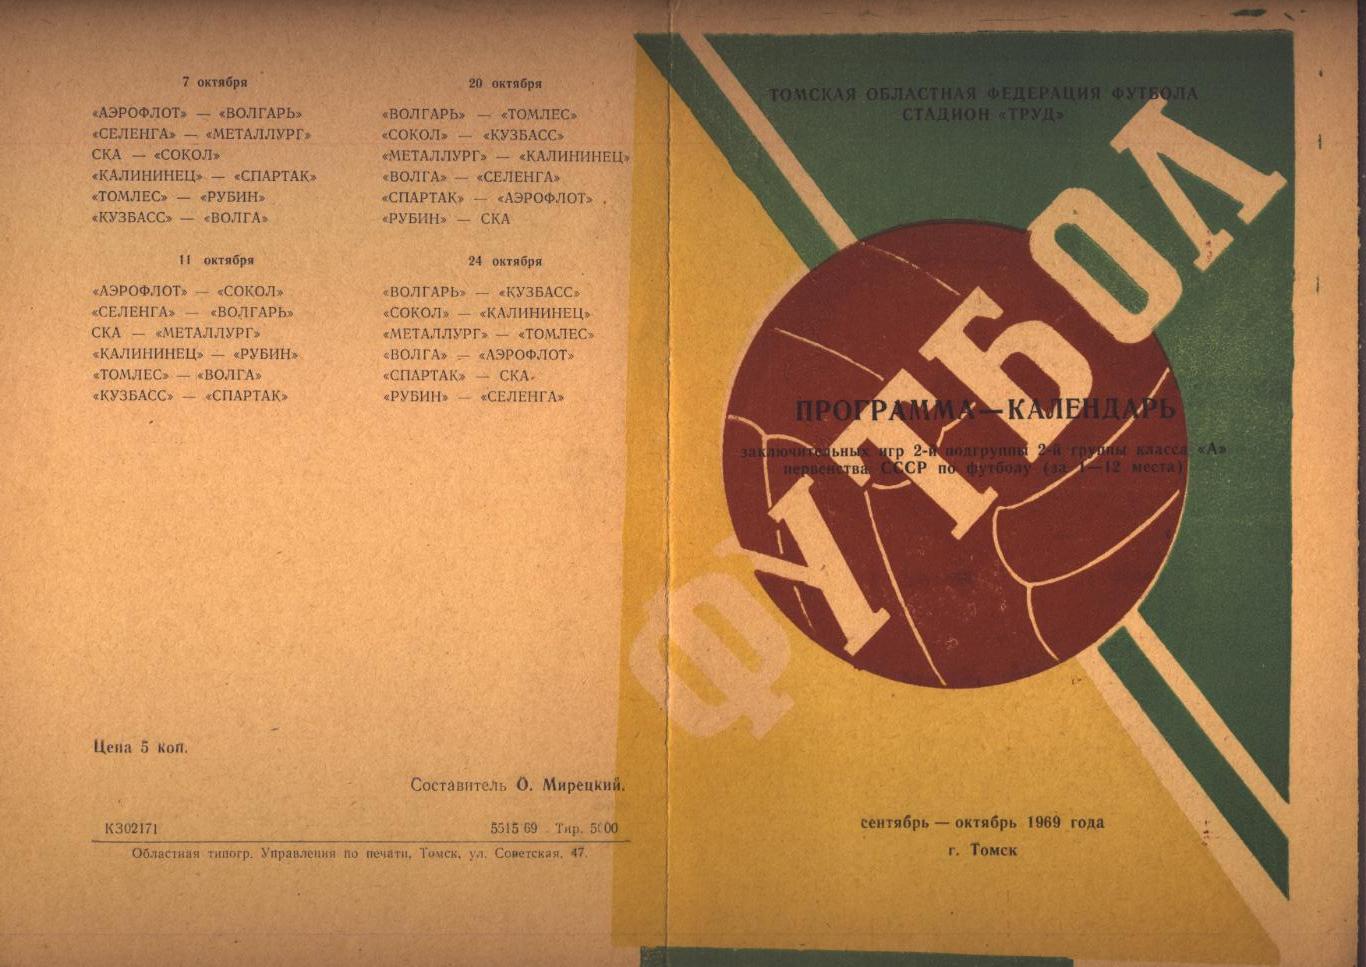 Футбол Первенство СССР Программа—календарь сентябрь—октябрь 1969 г. г. Томск